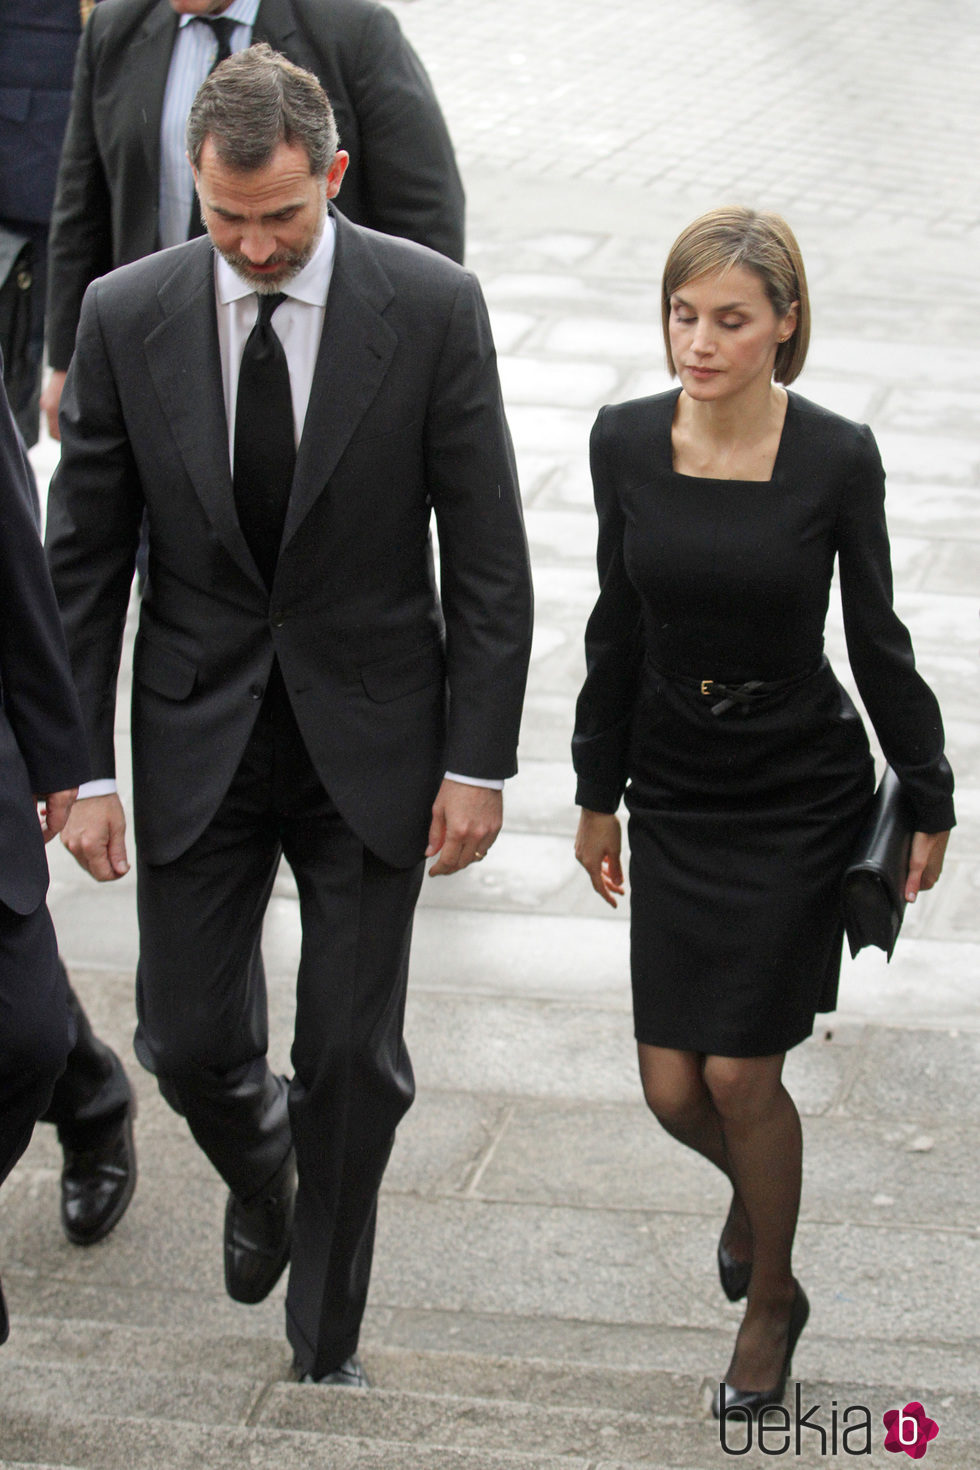 Los Reyes Felipe y Letizia llegan compungidos al funeral institucional por las víctimas del accidente de avión de Germanwings